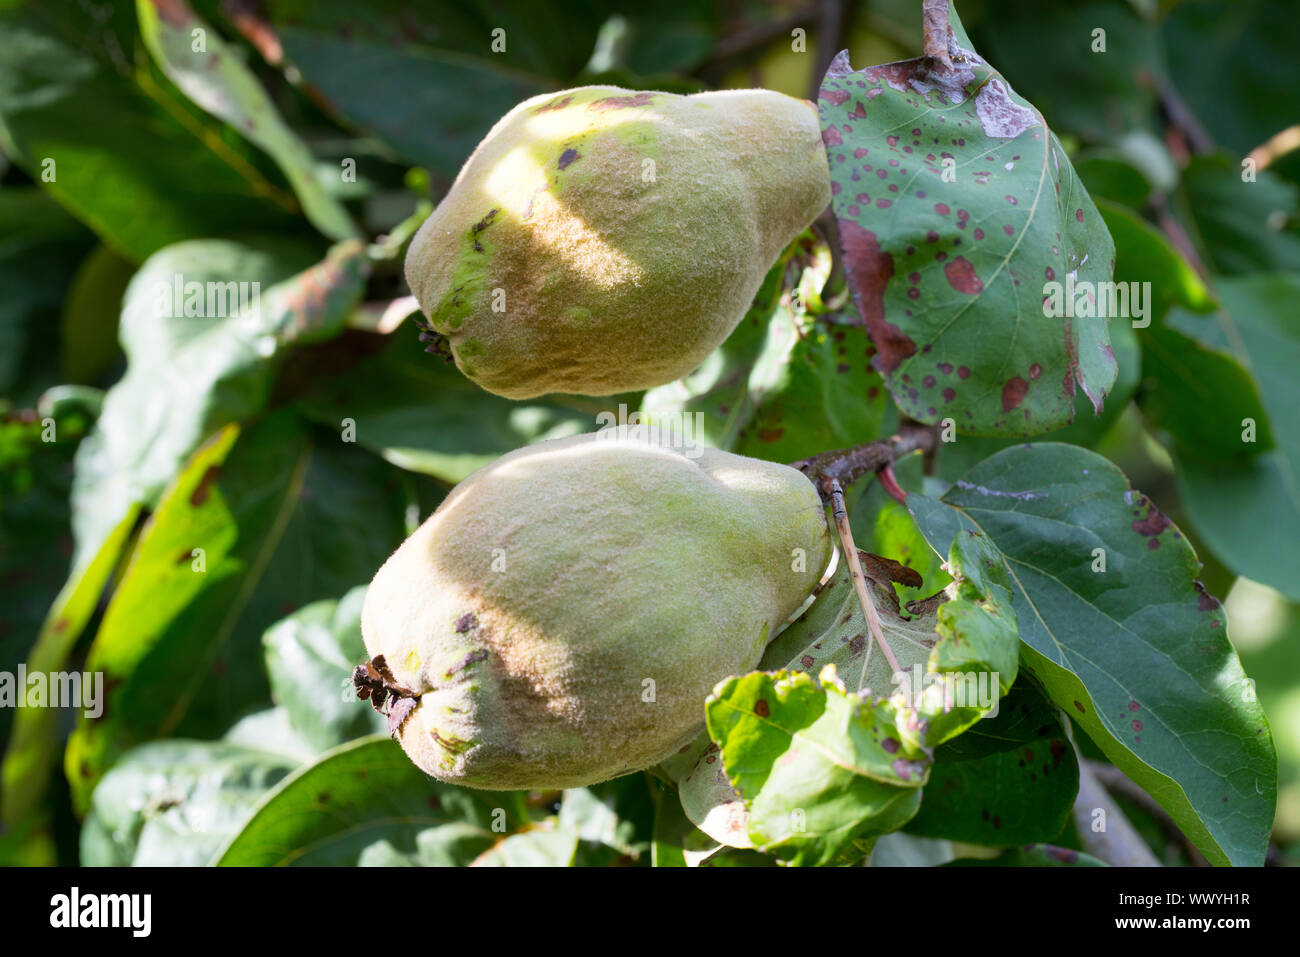 Quitten in einem Garten, Konstantinopel Quitte, Apfel Quitte Stockfoto